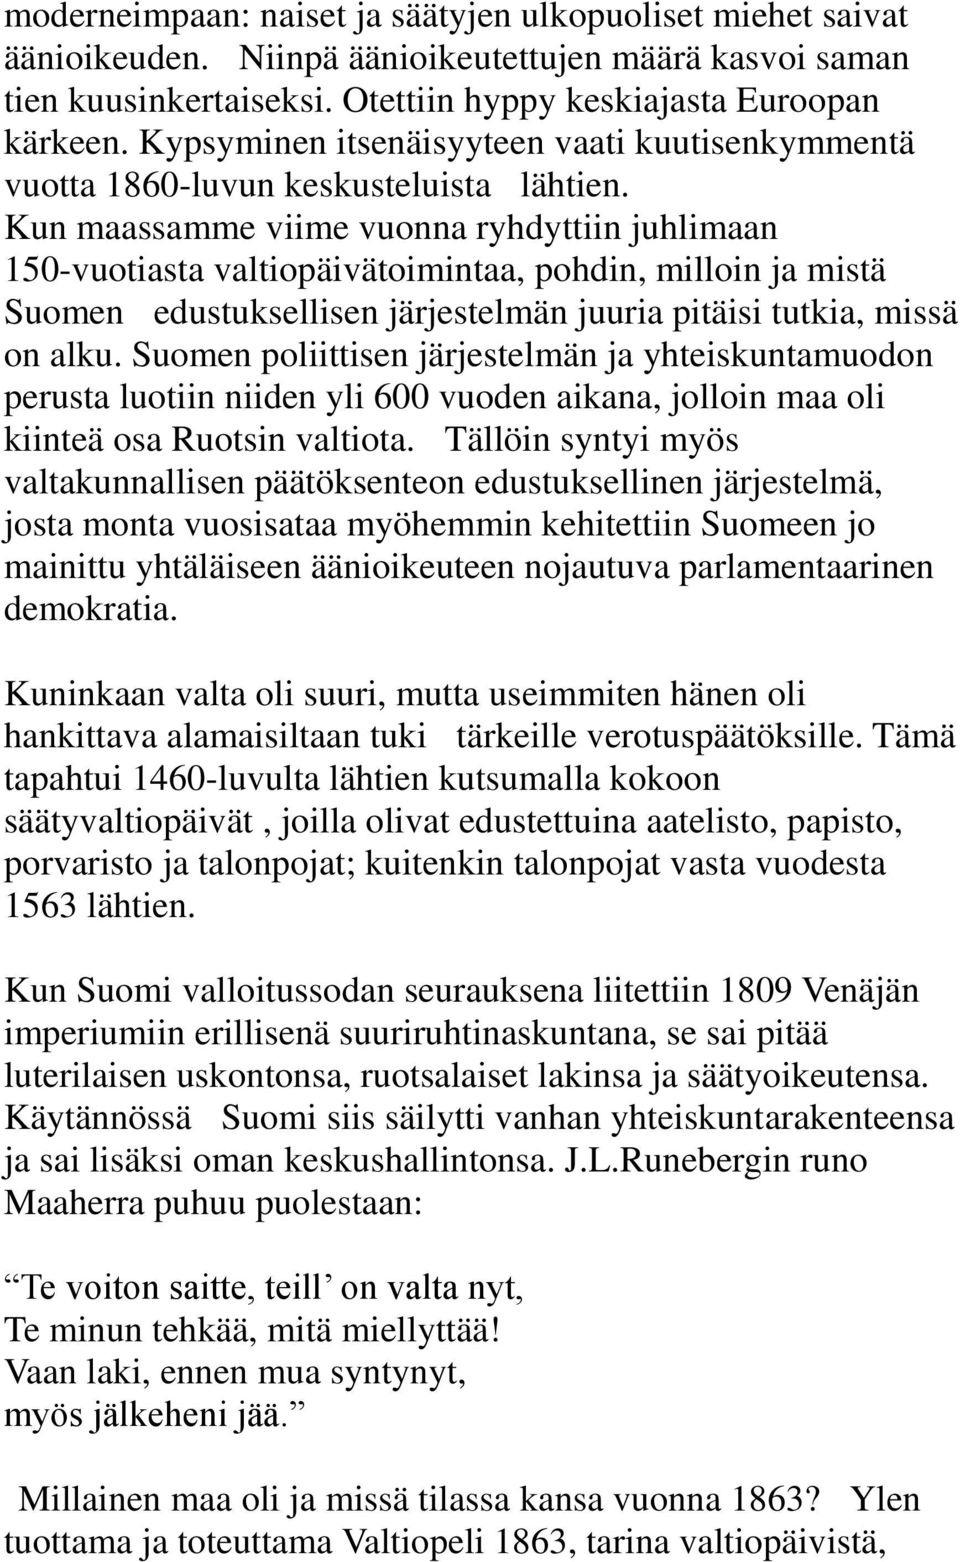 Kun maassamme viime vuonna ryhdyttiin juhlimaan 150-vuotiasta valtiopäivätoimintaa, pohdin, milloin ja mistä Suomen edustuksellisen järjestelmän juuria pitäisi tutkia, missä on alku.